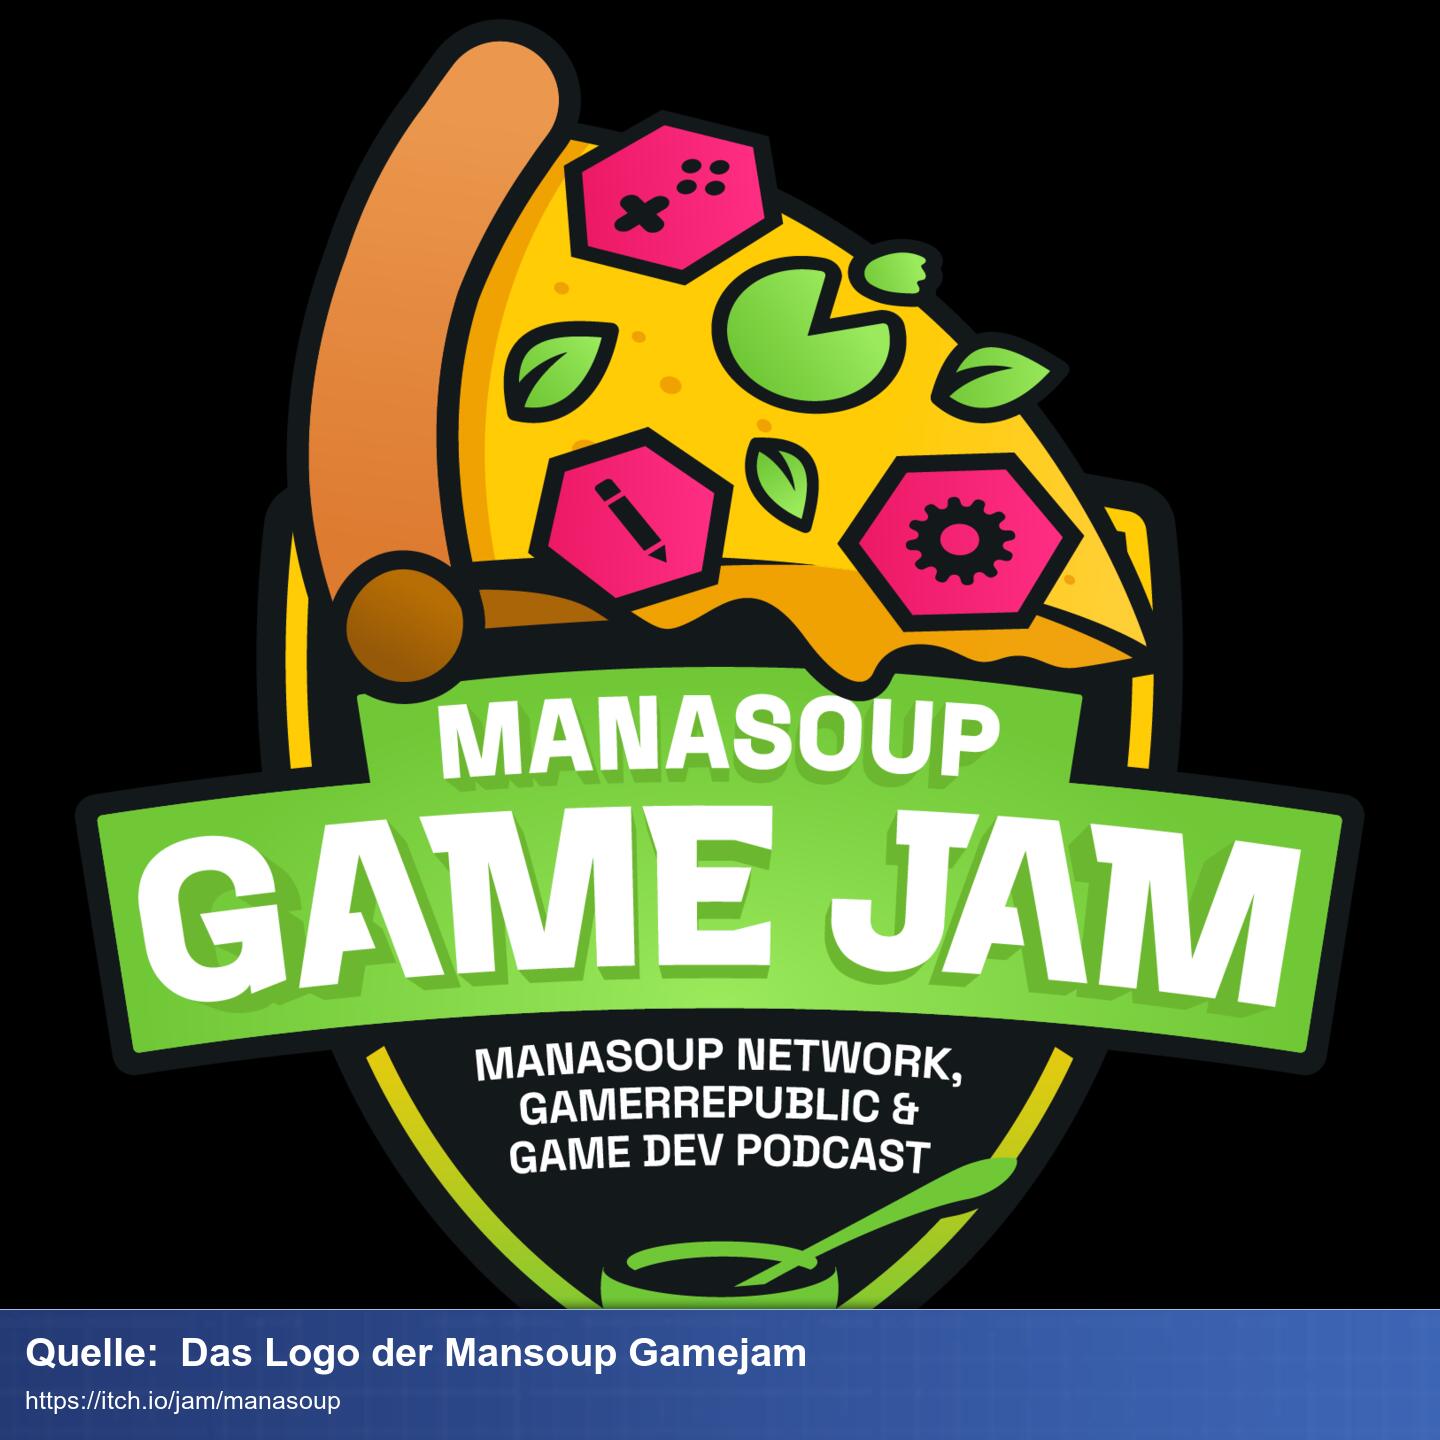 Das Logo besteht aus einem Wappen mit der Aufschrift 'Manasoup GameJam. Über dem Wappen thront ein Pizzastück wird auf dem rosa Sechsecke liegen welche die Logos der Gamerrepublic Website zeigen.